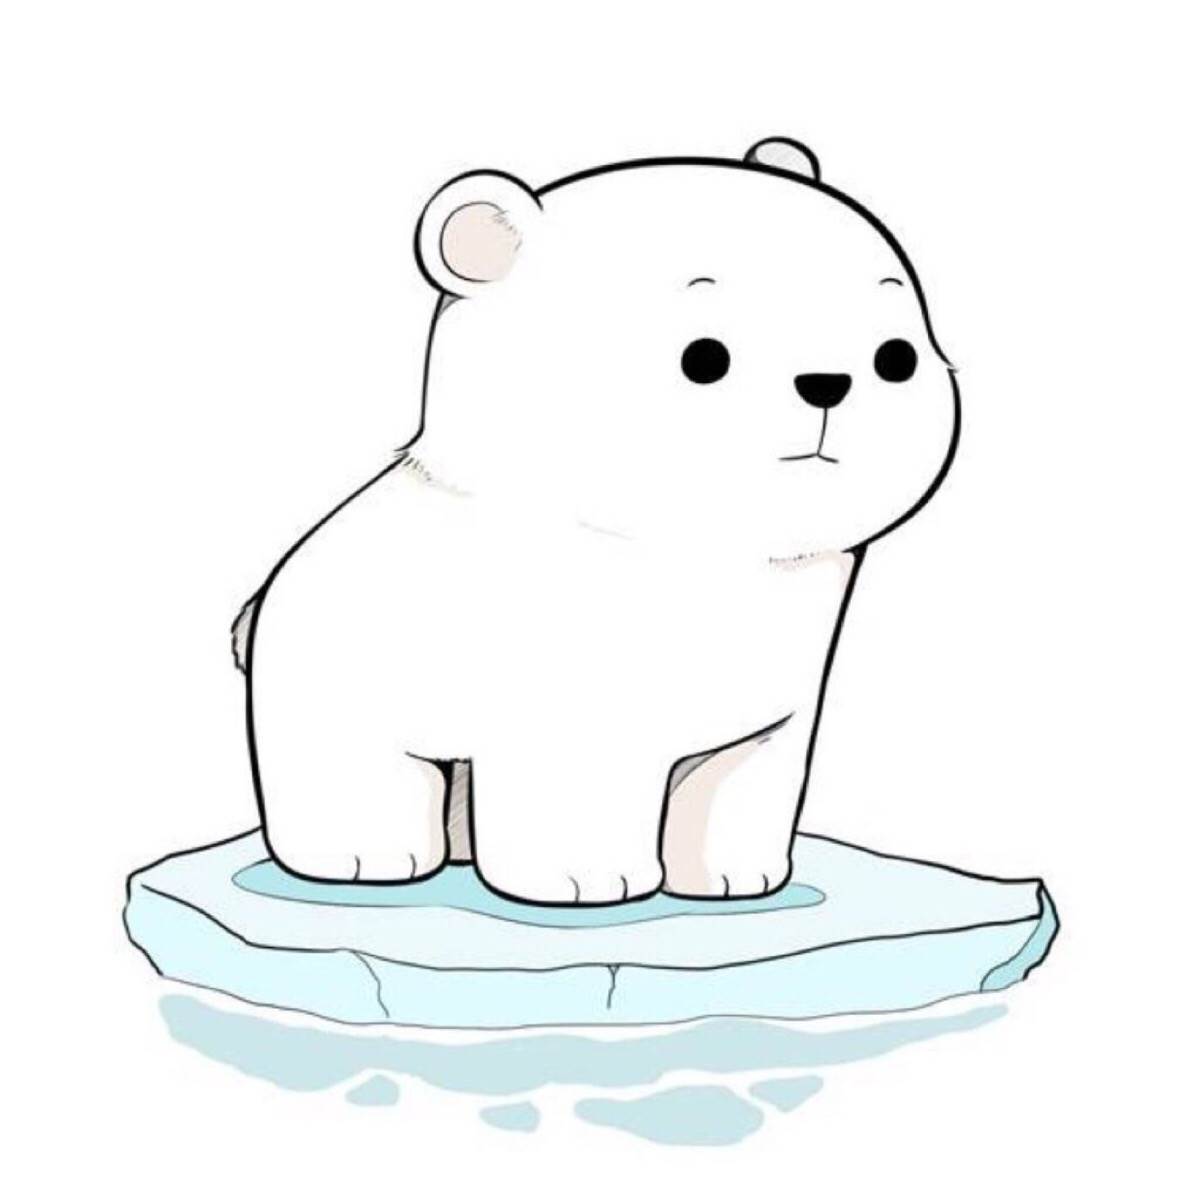 简单北极熊的画法图片